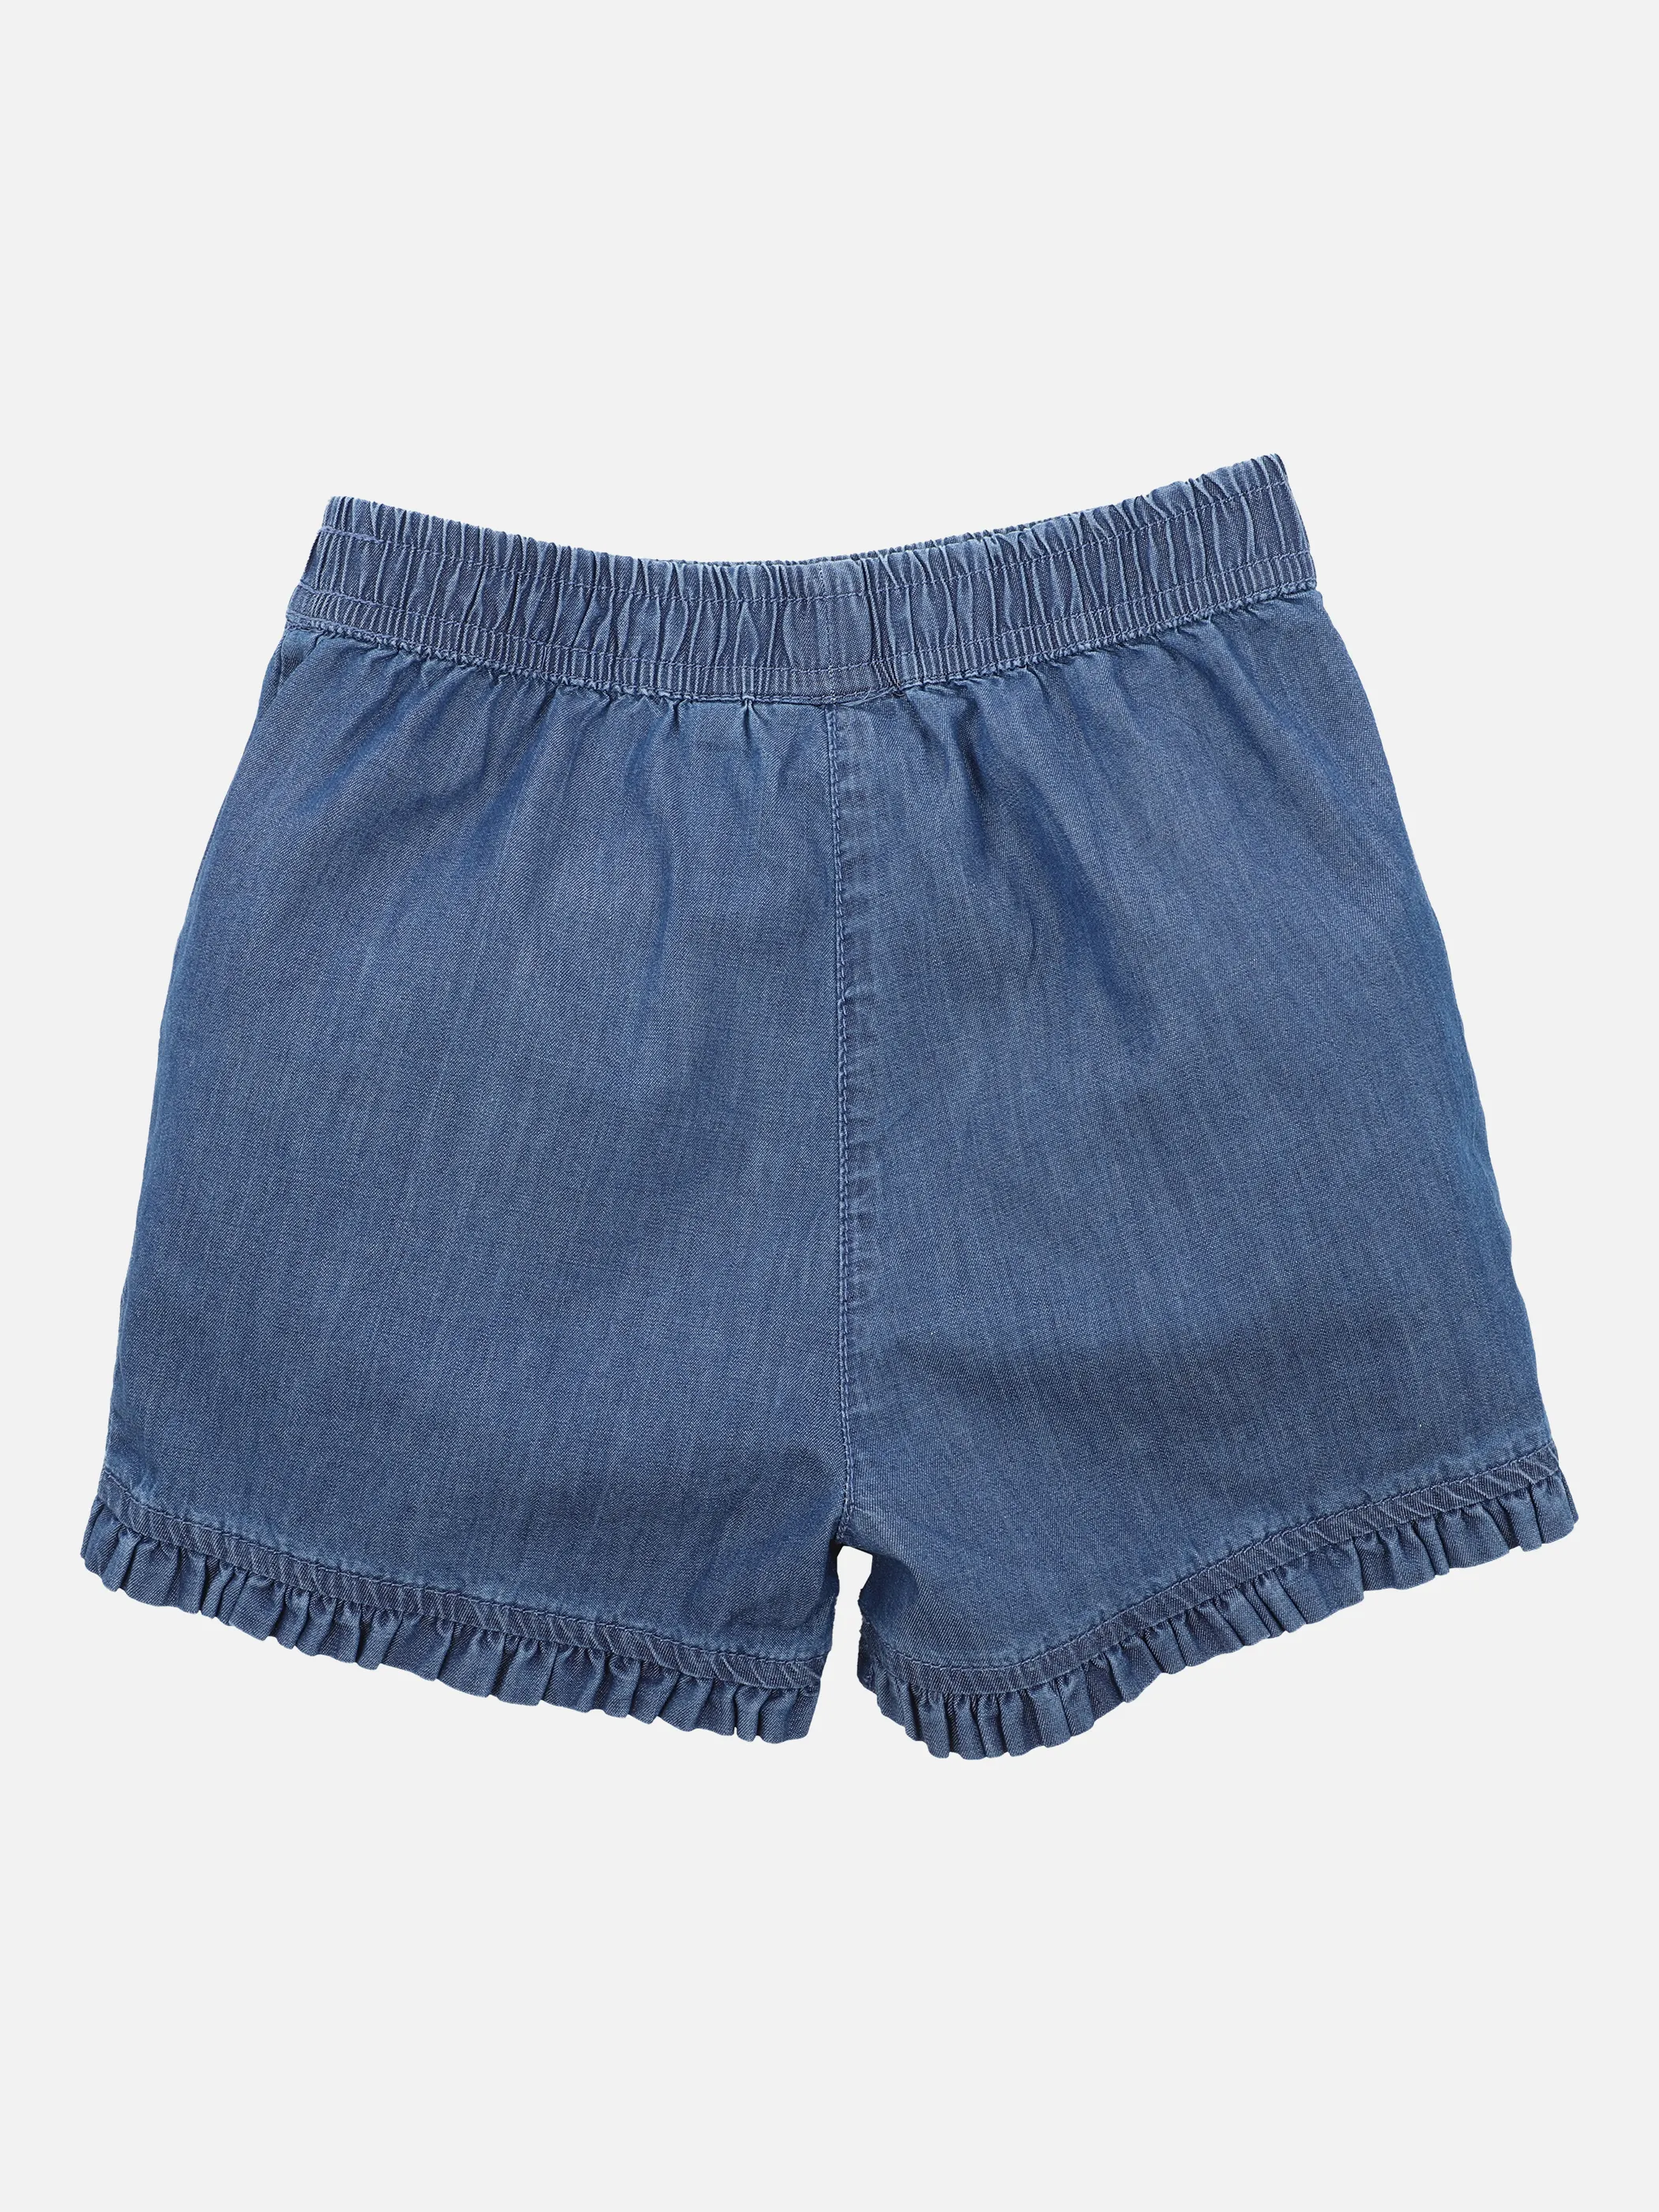 Stop + Go MG Jeans Shorts in hellem Blau 862788 HELLBLAU 2